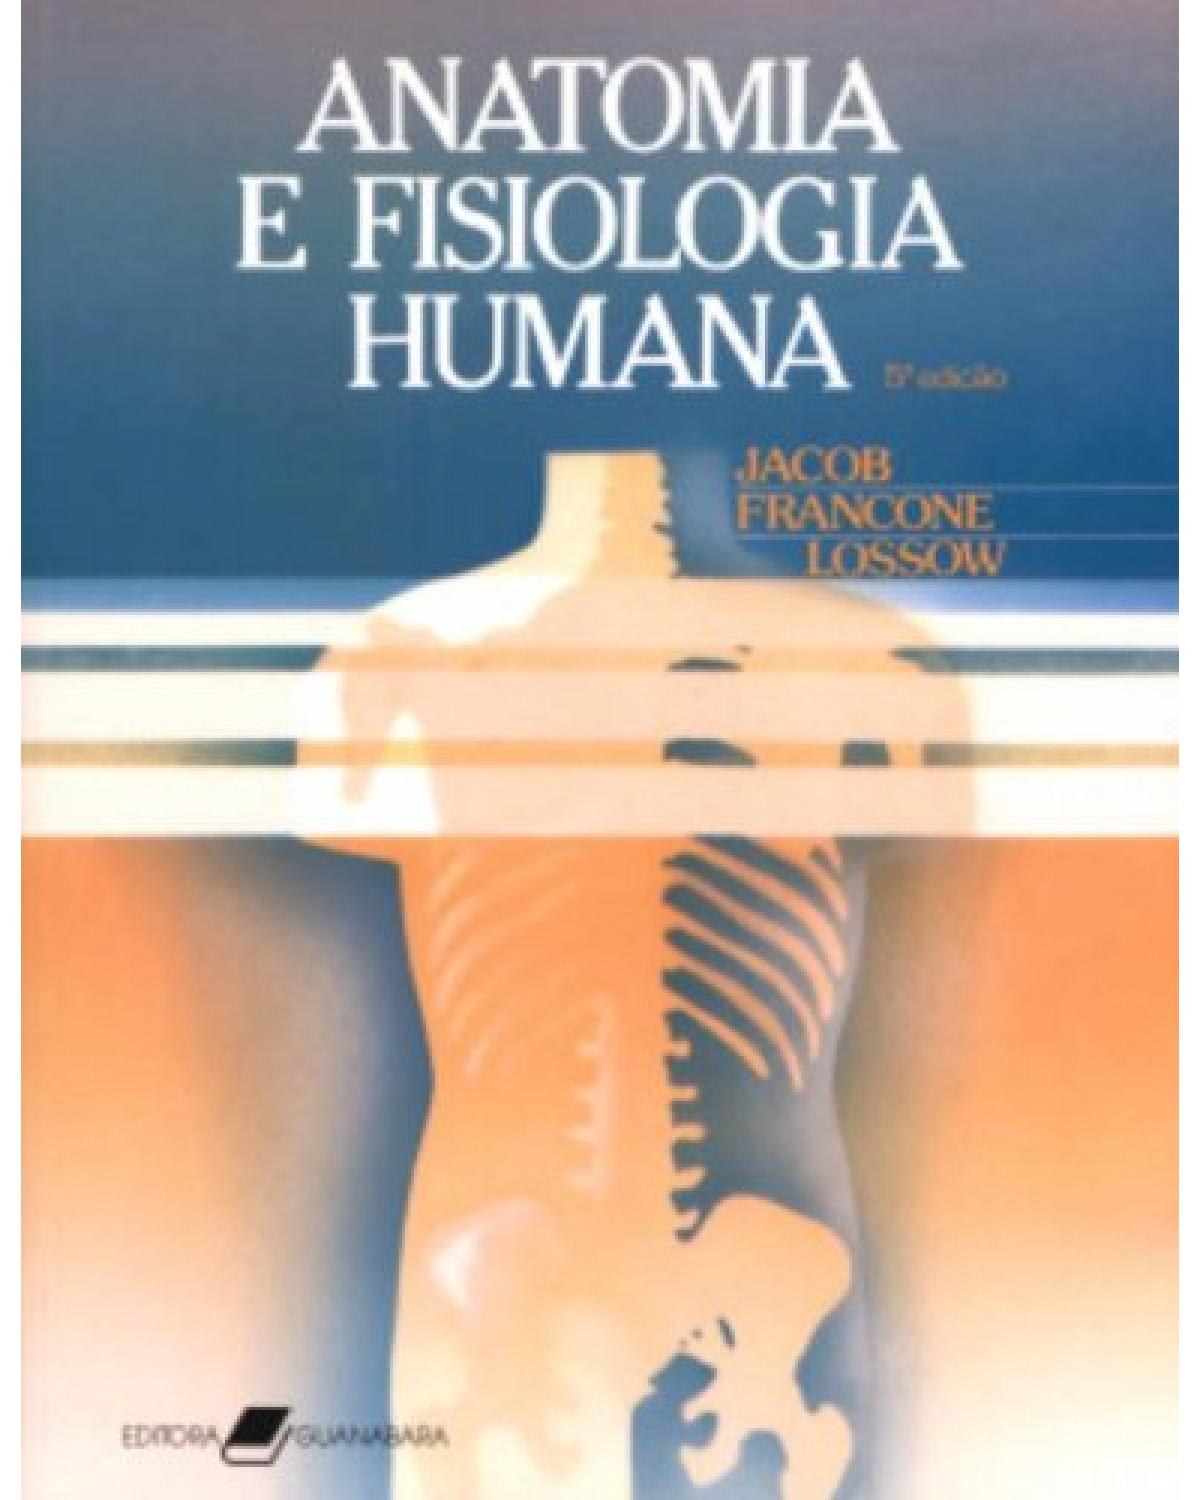 Anatomia e fisiologia humana - 5ª Edição | 1990